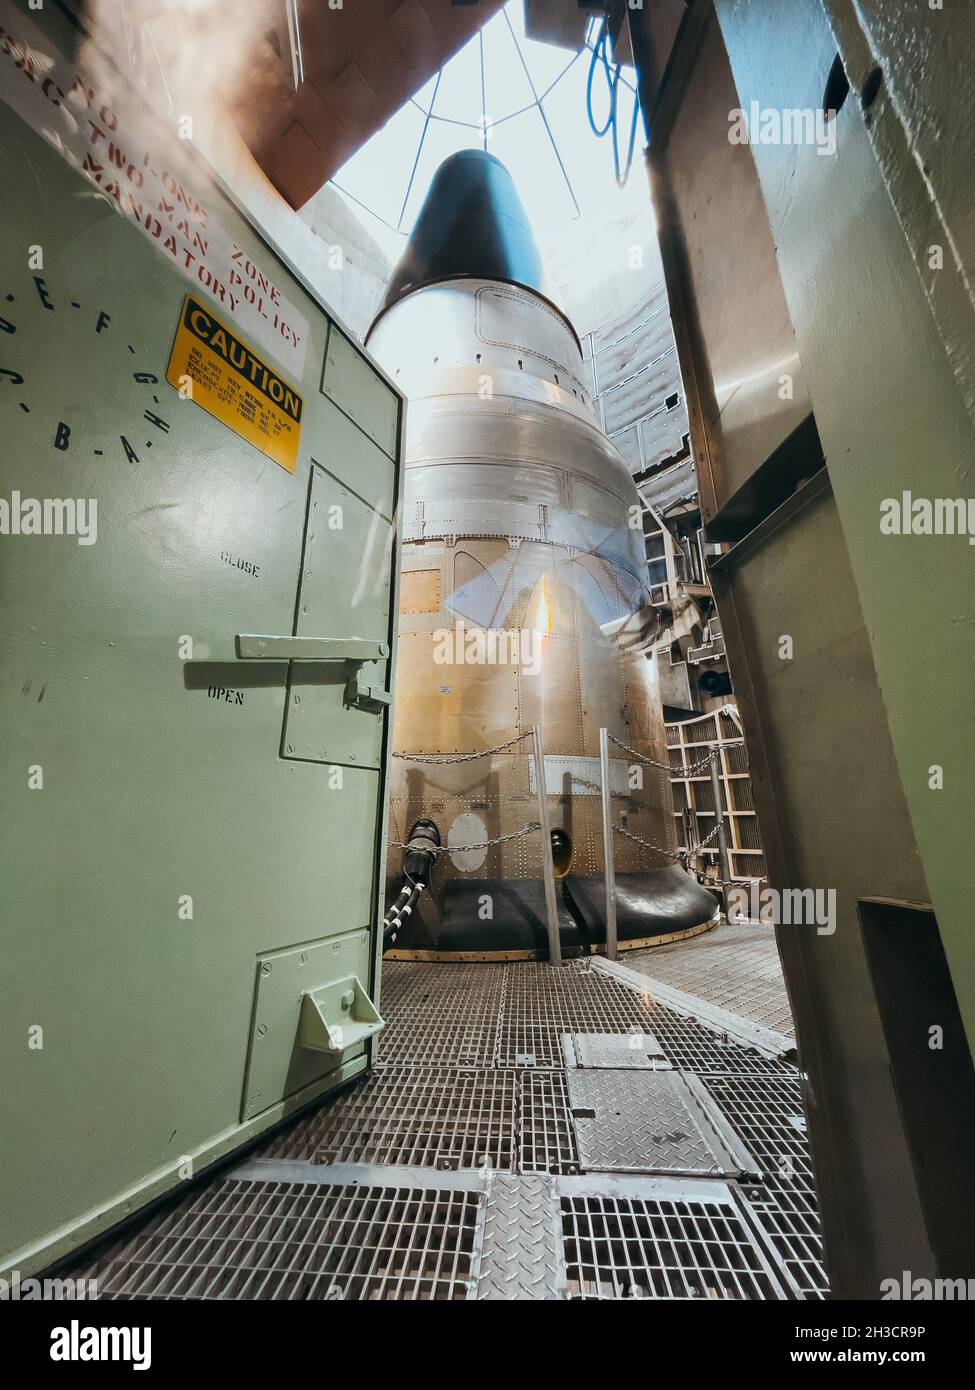 Eine schwere Metalltür oben auf dem Titan-Raketensilo sitzt ajar, so dass Besucher den Raketenwerfer sehen können Stockfoto